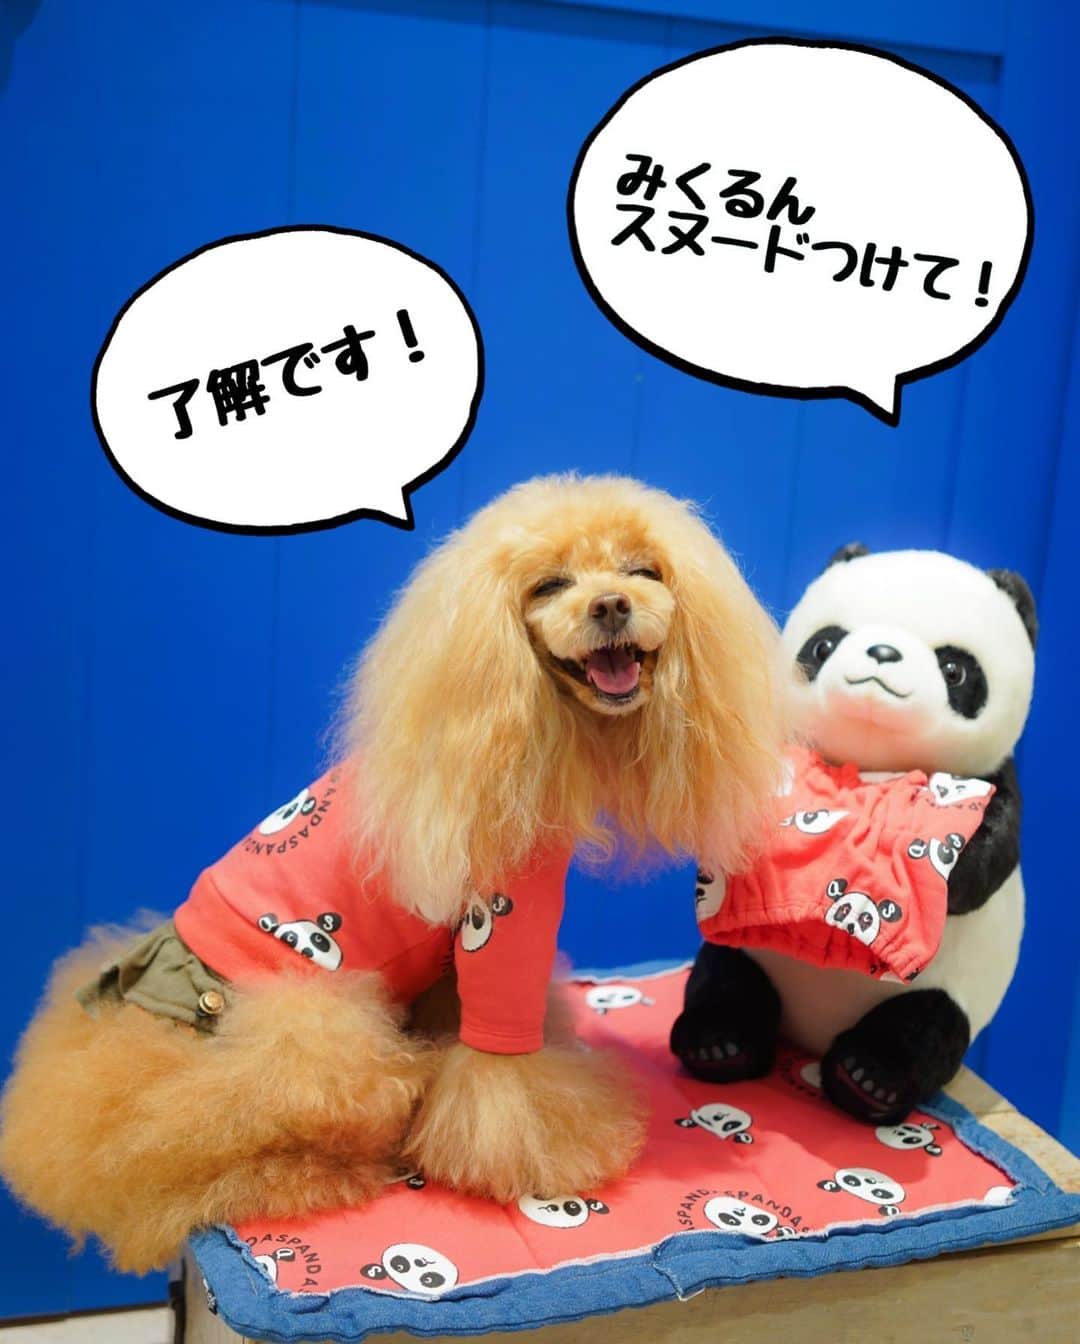 Toypoodle Mikuru?Asakusa Tokyoのインスタグラム：「20201215 Tuesday. 【Mikuru information🌟】 熊猫と書いてパンダと読みます🐼 . ⭐️ NASパンダパンダPO ⭐️ W00744 / ¥7,200+tax ダスティBL / コーラルPK 2色展開🐼 ASパンダ可愛いですよ😍 背中に笹の葉の刺繍が🪡 みくるはコーラルPK のサイズ1です。  ⭐️ ASパンダスヌード ⭐️ WY0160 / ¥3,500+tax S / M あります‼️ みきゅるんはSサイズを☺️  ⭐️ ASパンダカフェマット ⭐️ WY0105 / ¥5,800+tax  彼氏 ( @laugh0903 ) はダスティBL。 イロチペアコーデで写真撮りたいなぁ🥰  現在、各店舗では「Dewan年末ジャンボ宝くじ」を行ってますよん🥰 ............................ 在庫やサイズ相談など詳細は @asknowasdewan_marronniergate にお問合せください☺️  以上、Mikuru information でした🌟  #asknowasdewan #asknowasdewan公式アンバサダー #マロニエゲート銀座 #第17期PPモデル」